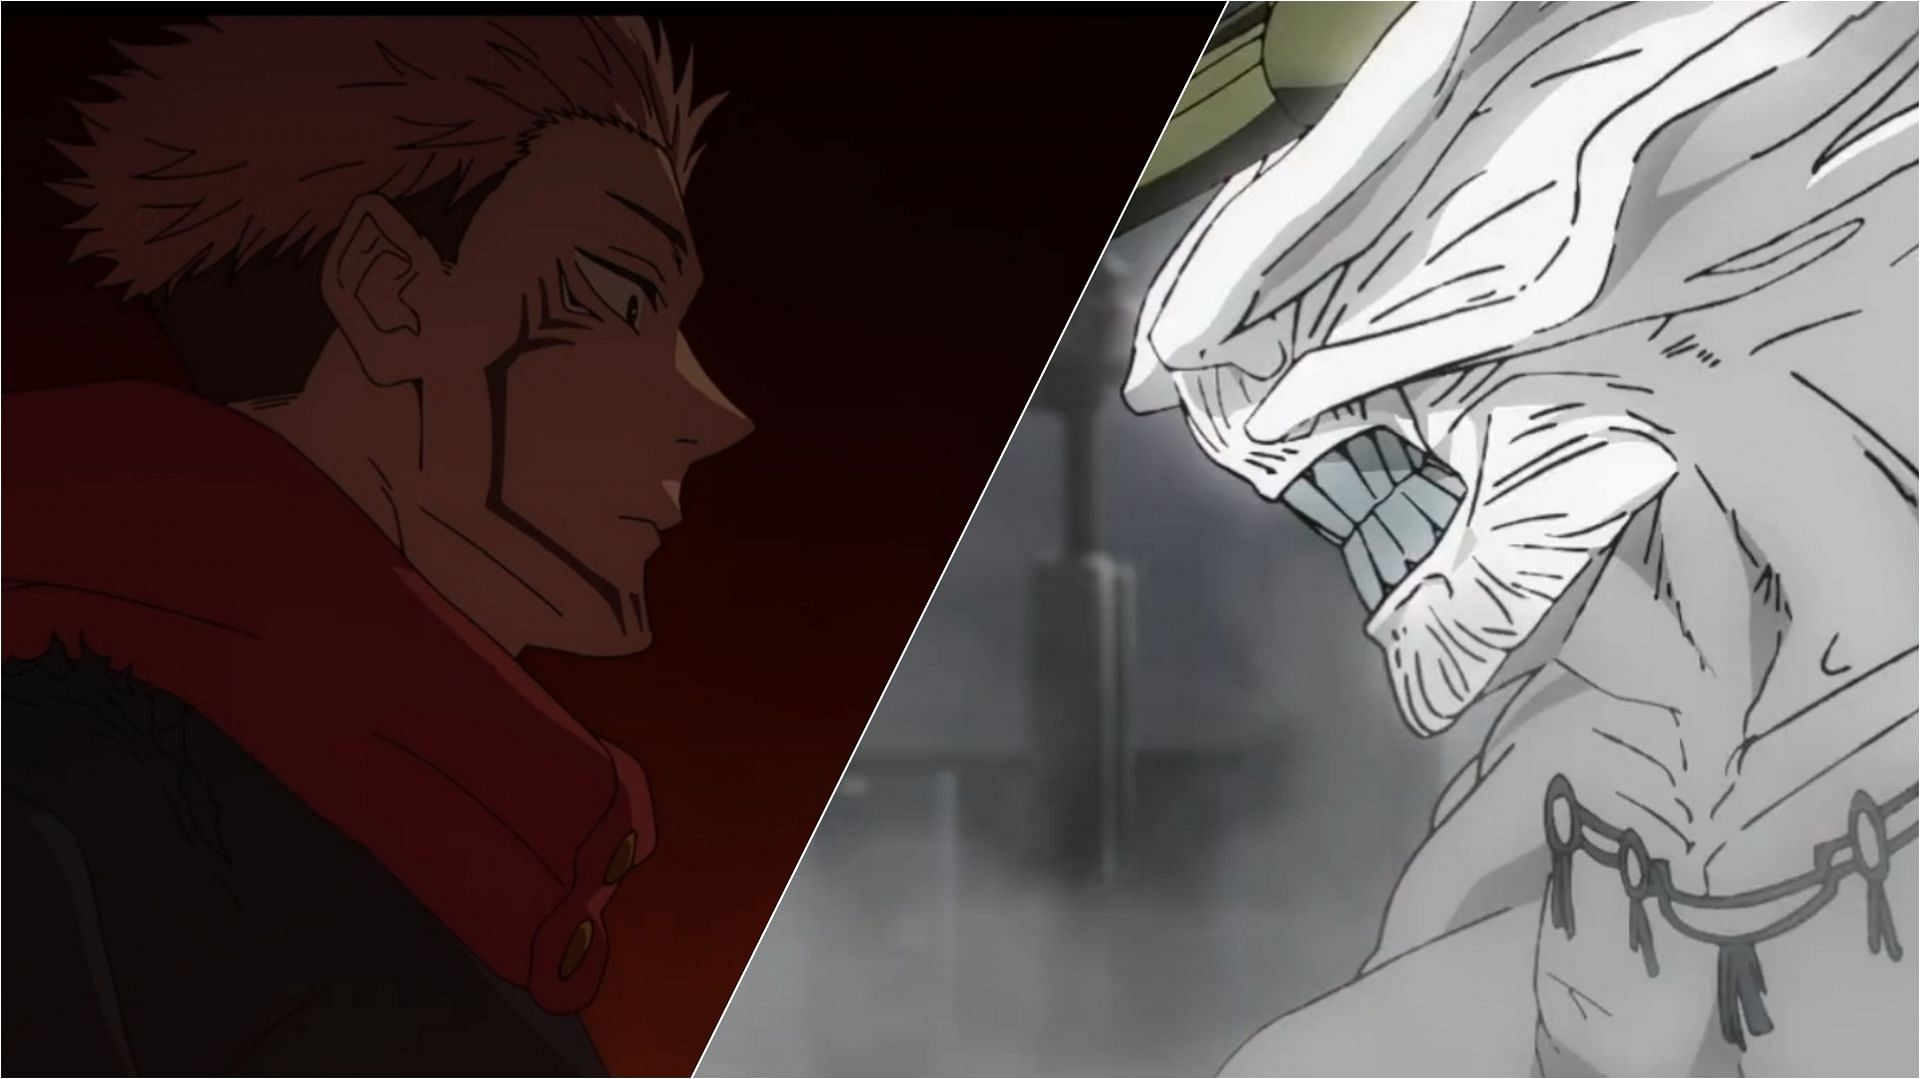 Sukuna vs. Mahoraga in Jujutsu Kaisen season 2 episode 17 (Image via MAPPA)